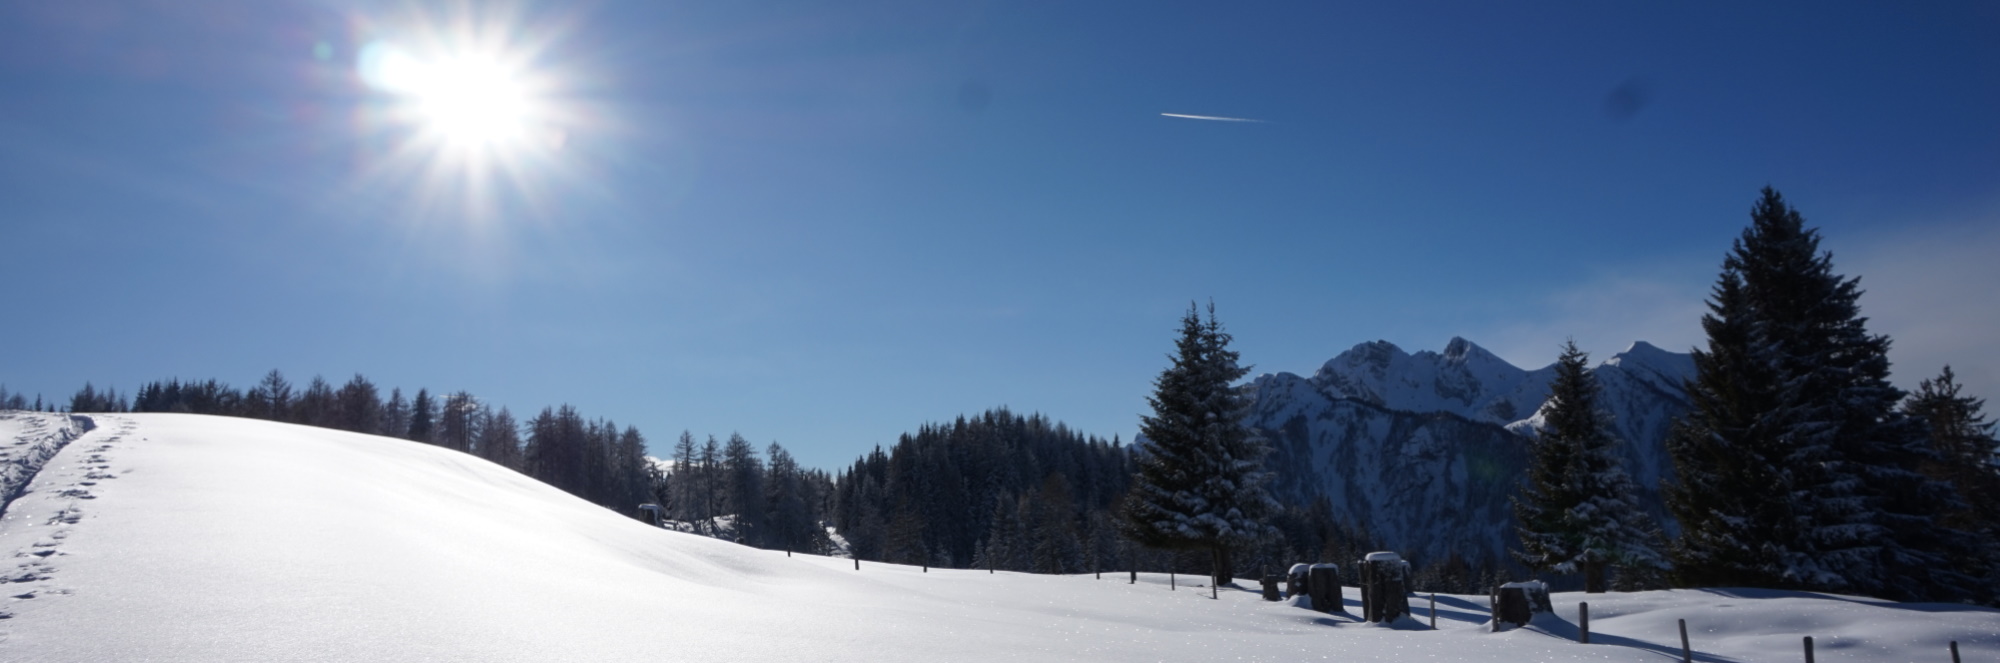 Familien im Skigebiet Gernkogel in St. Johann im Pongau im Alpendorf - mitten in Ski amadé